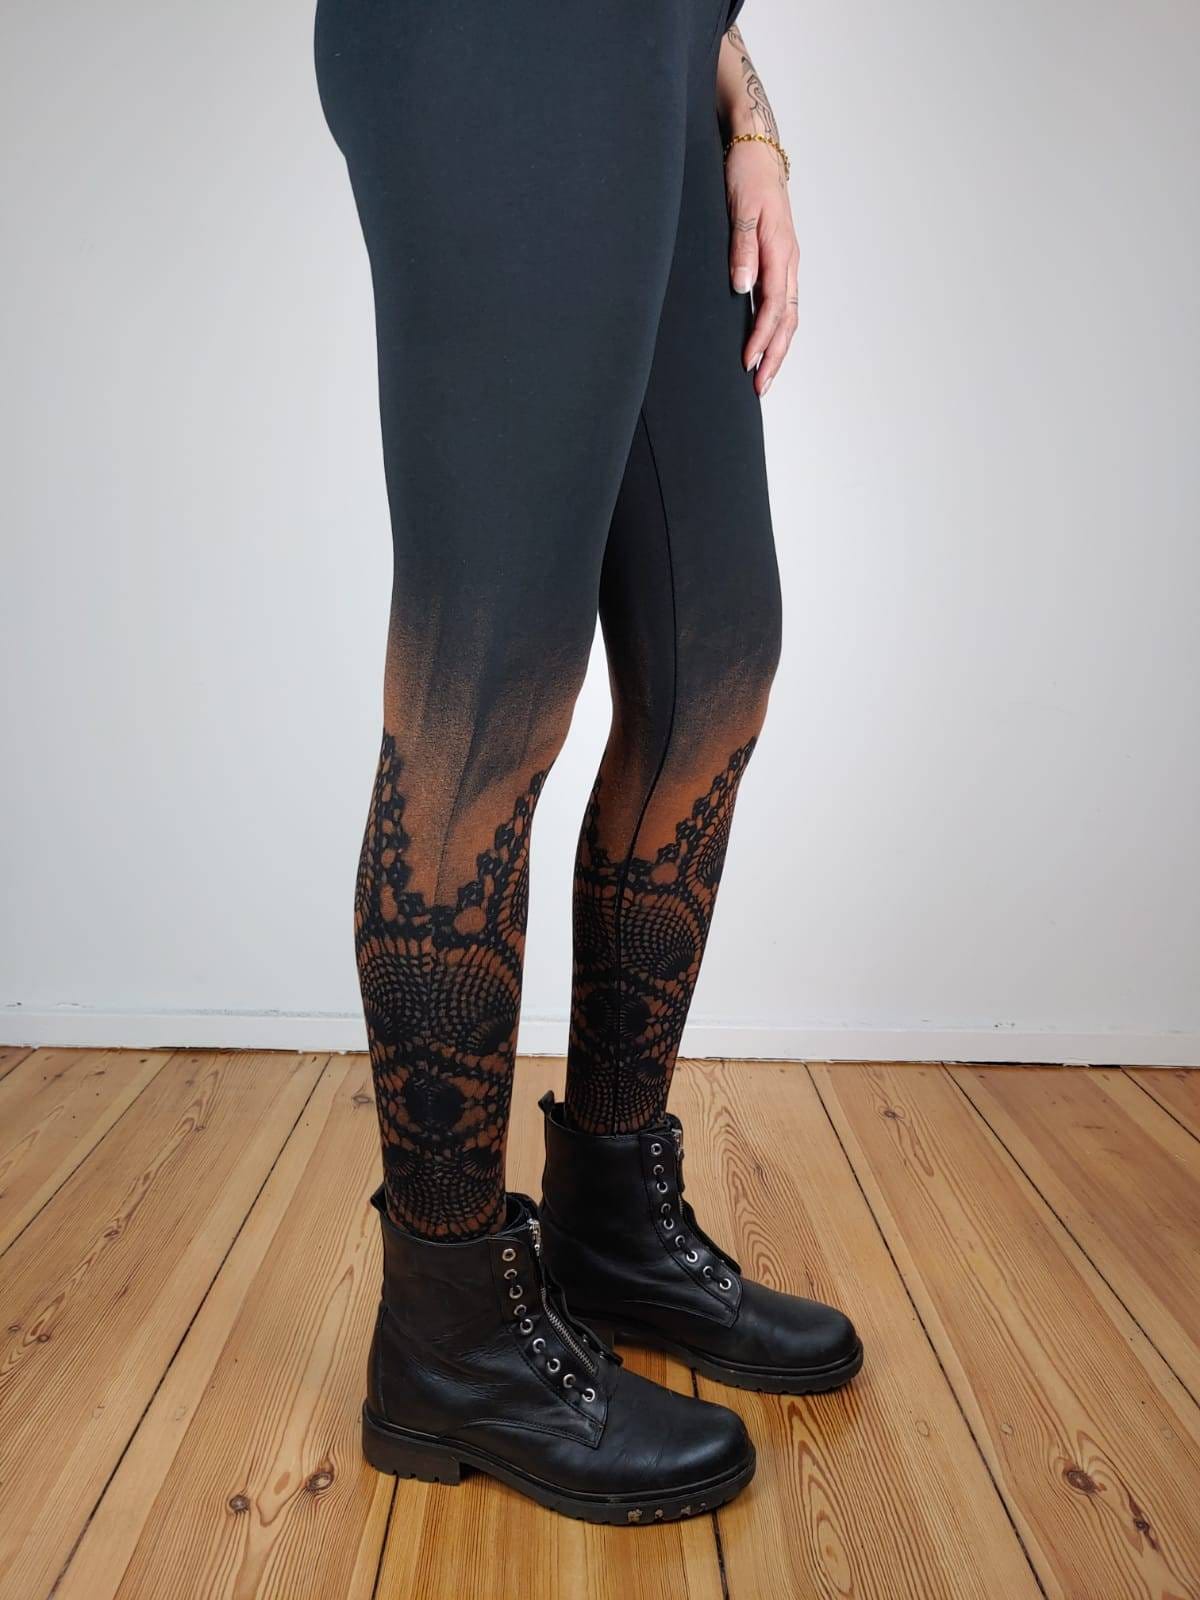 Tattoo Leggings, Printed High Waisted Leggings, Fire Leggings for